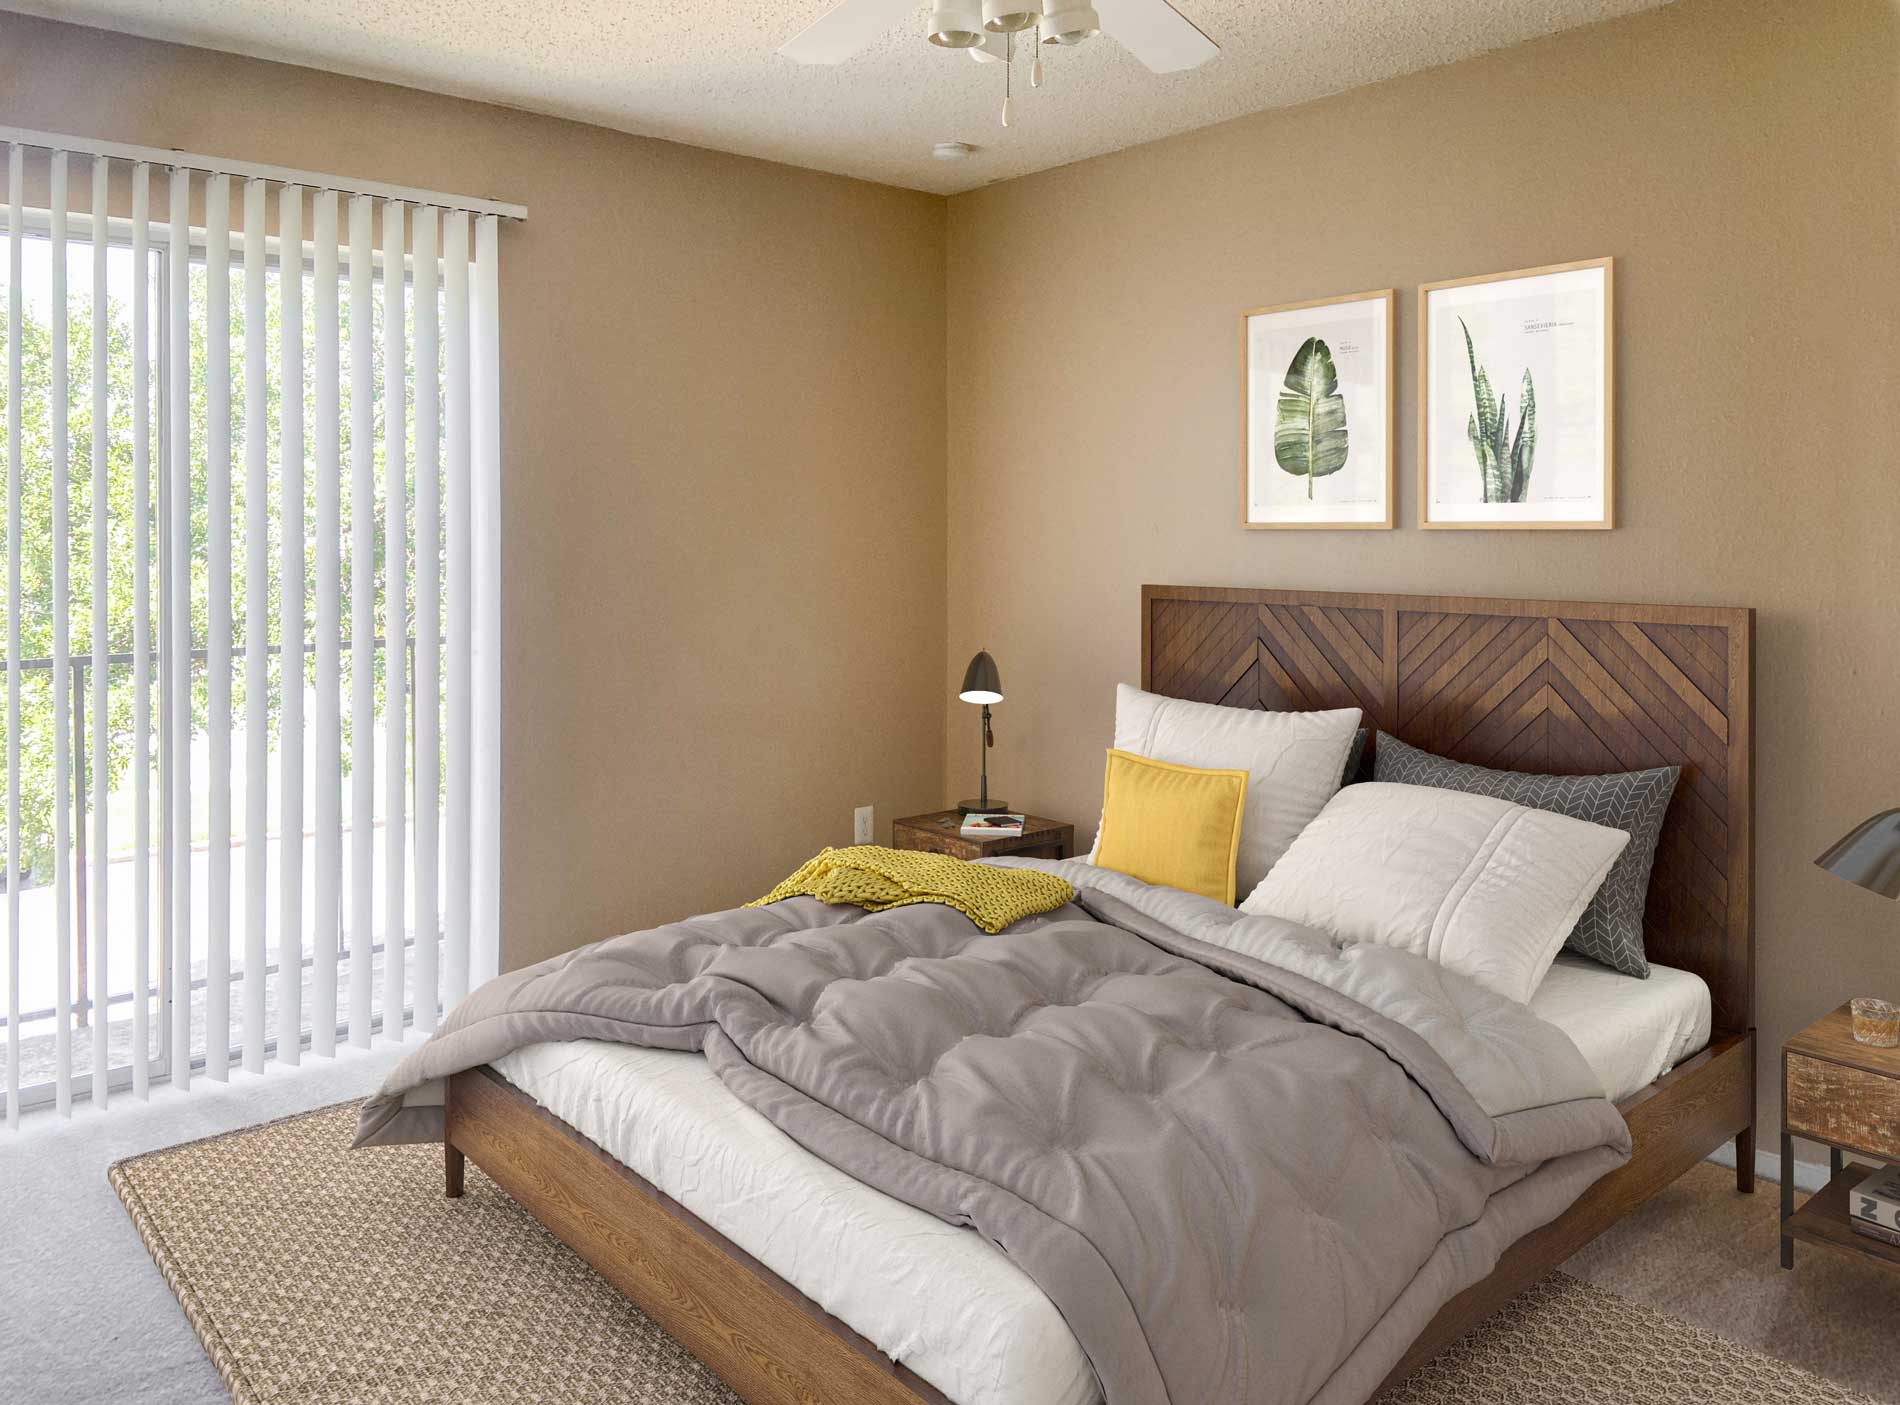 Cozy Bedroom with Vertical Window Blinds